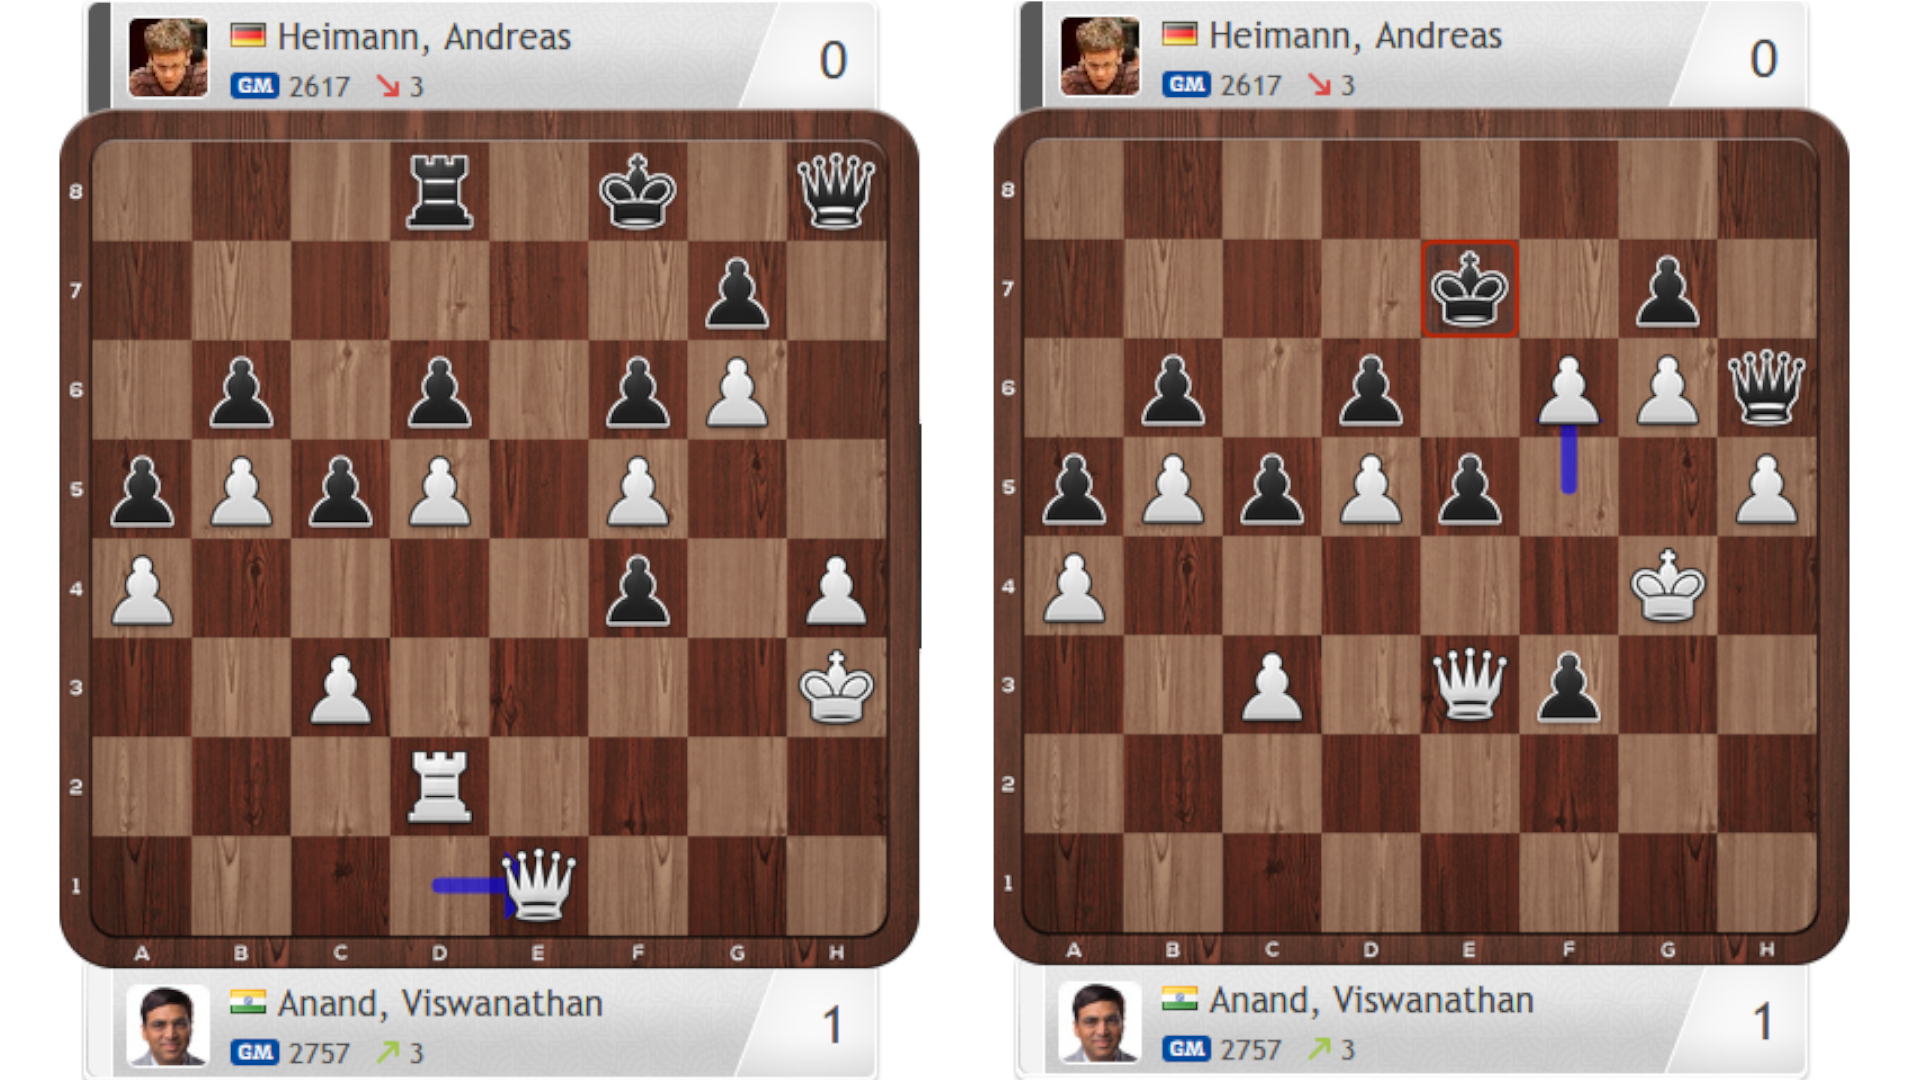 Anand versus Heimann